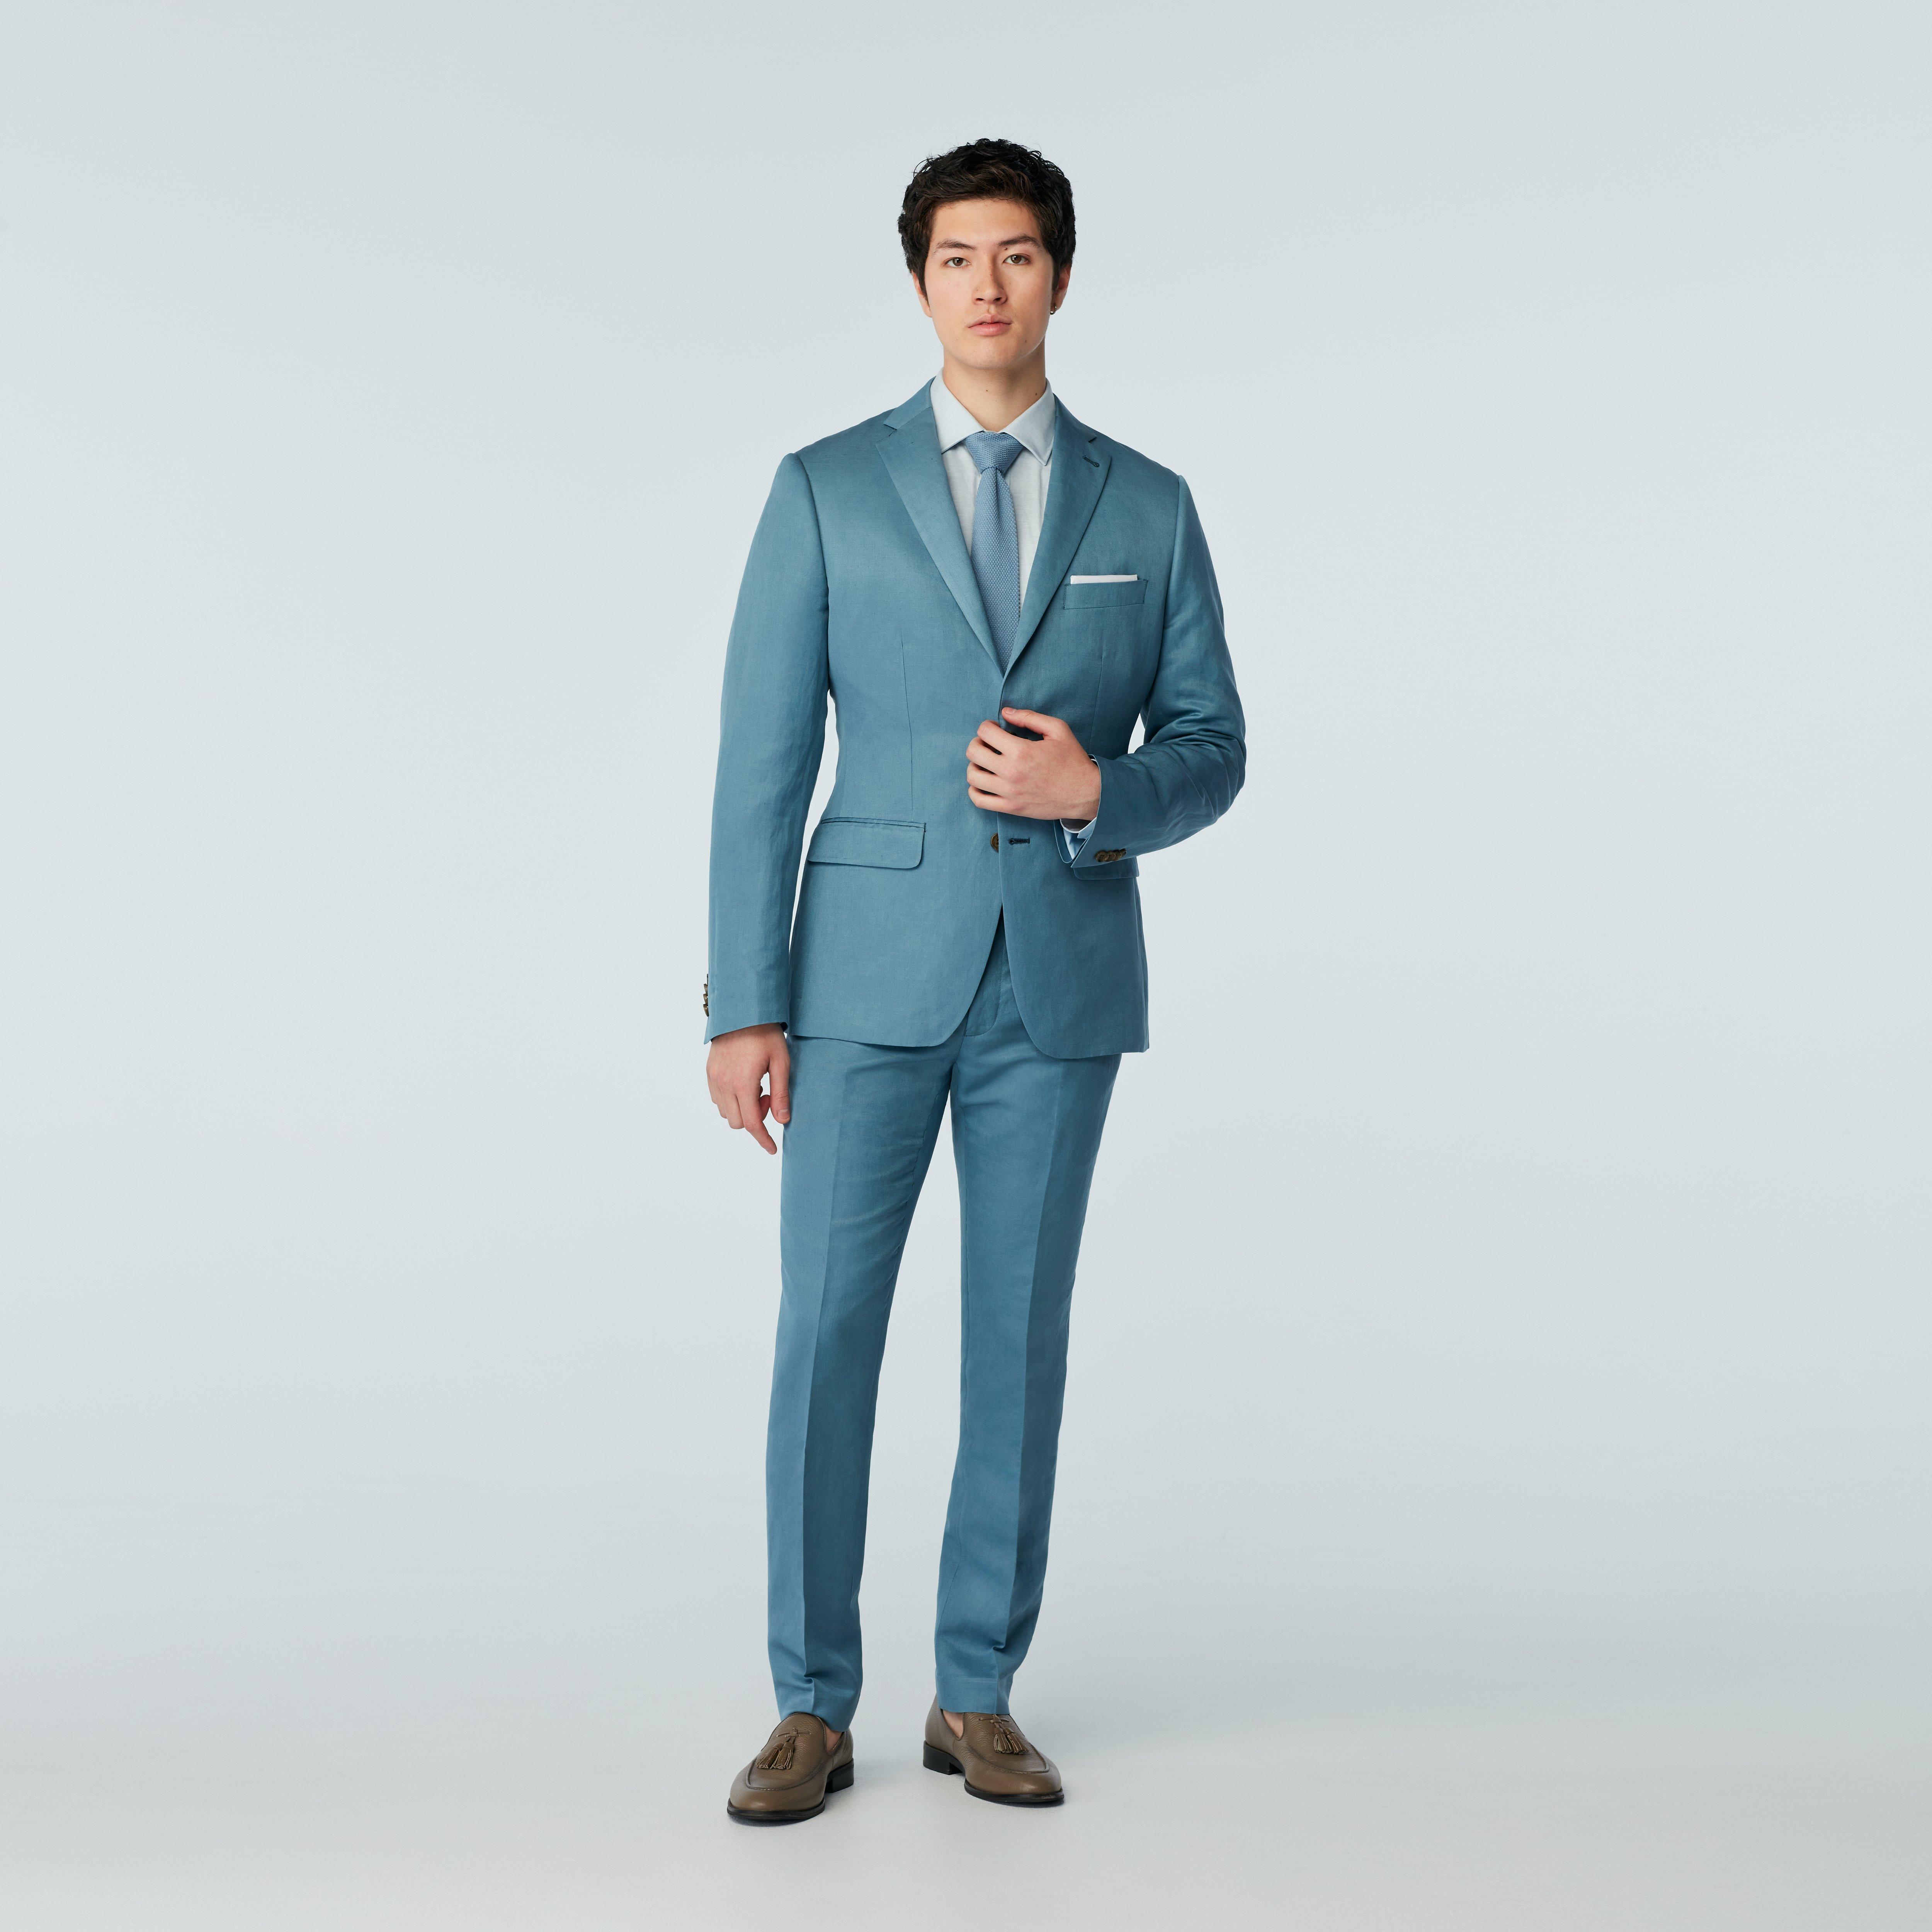 Women's Light Blue Suit, Suits for Weddings & Events